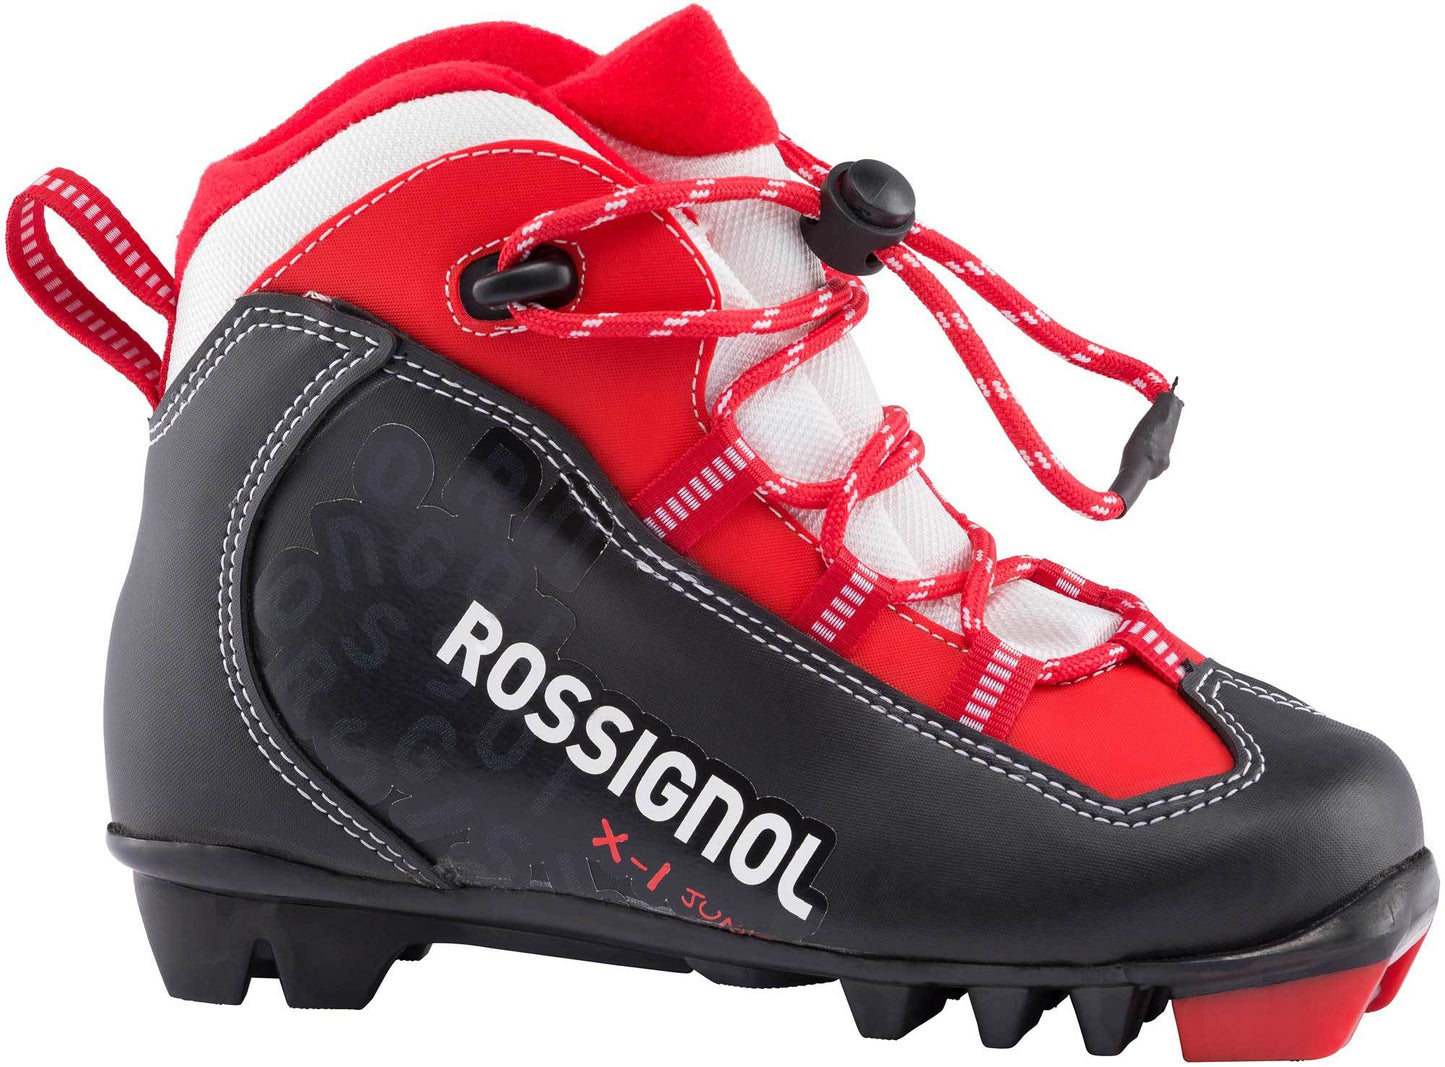 Rossignol X1 Junior Classic Nordic Ski Boots